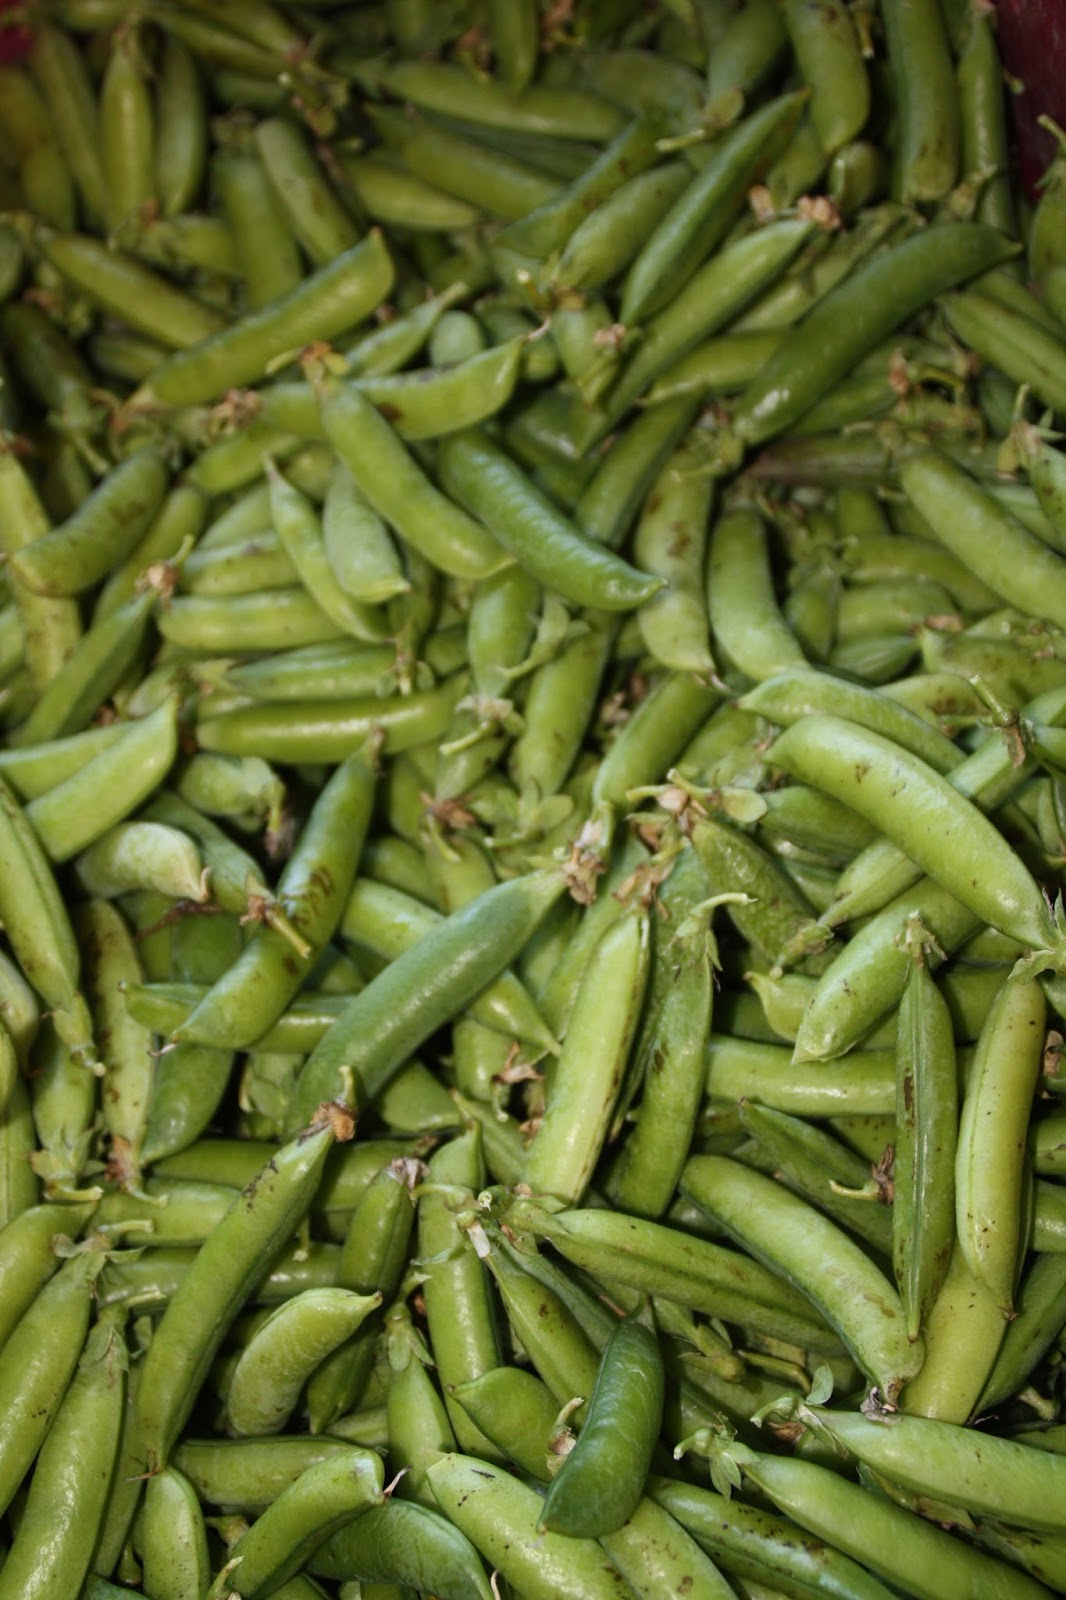 Bosavern Community Farm: Picking peas.